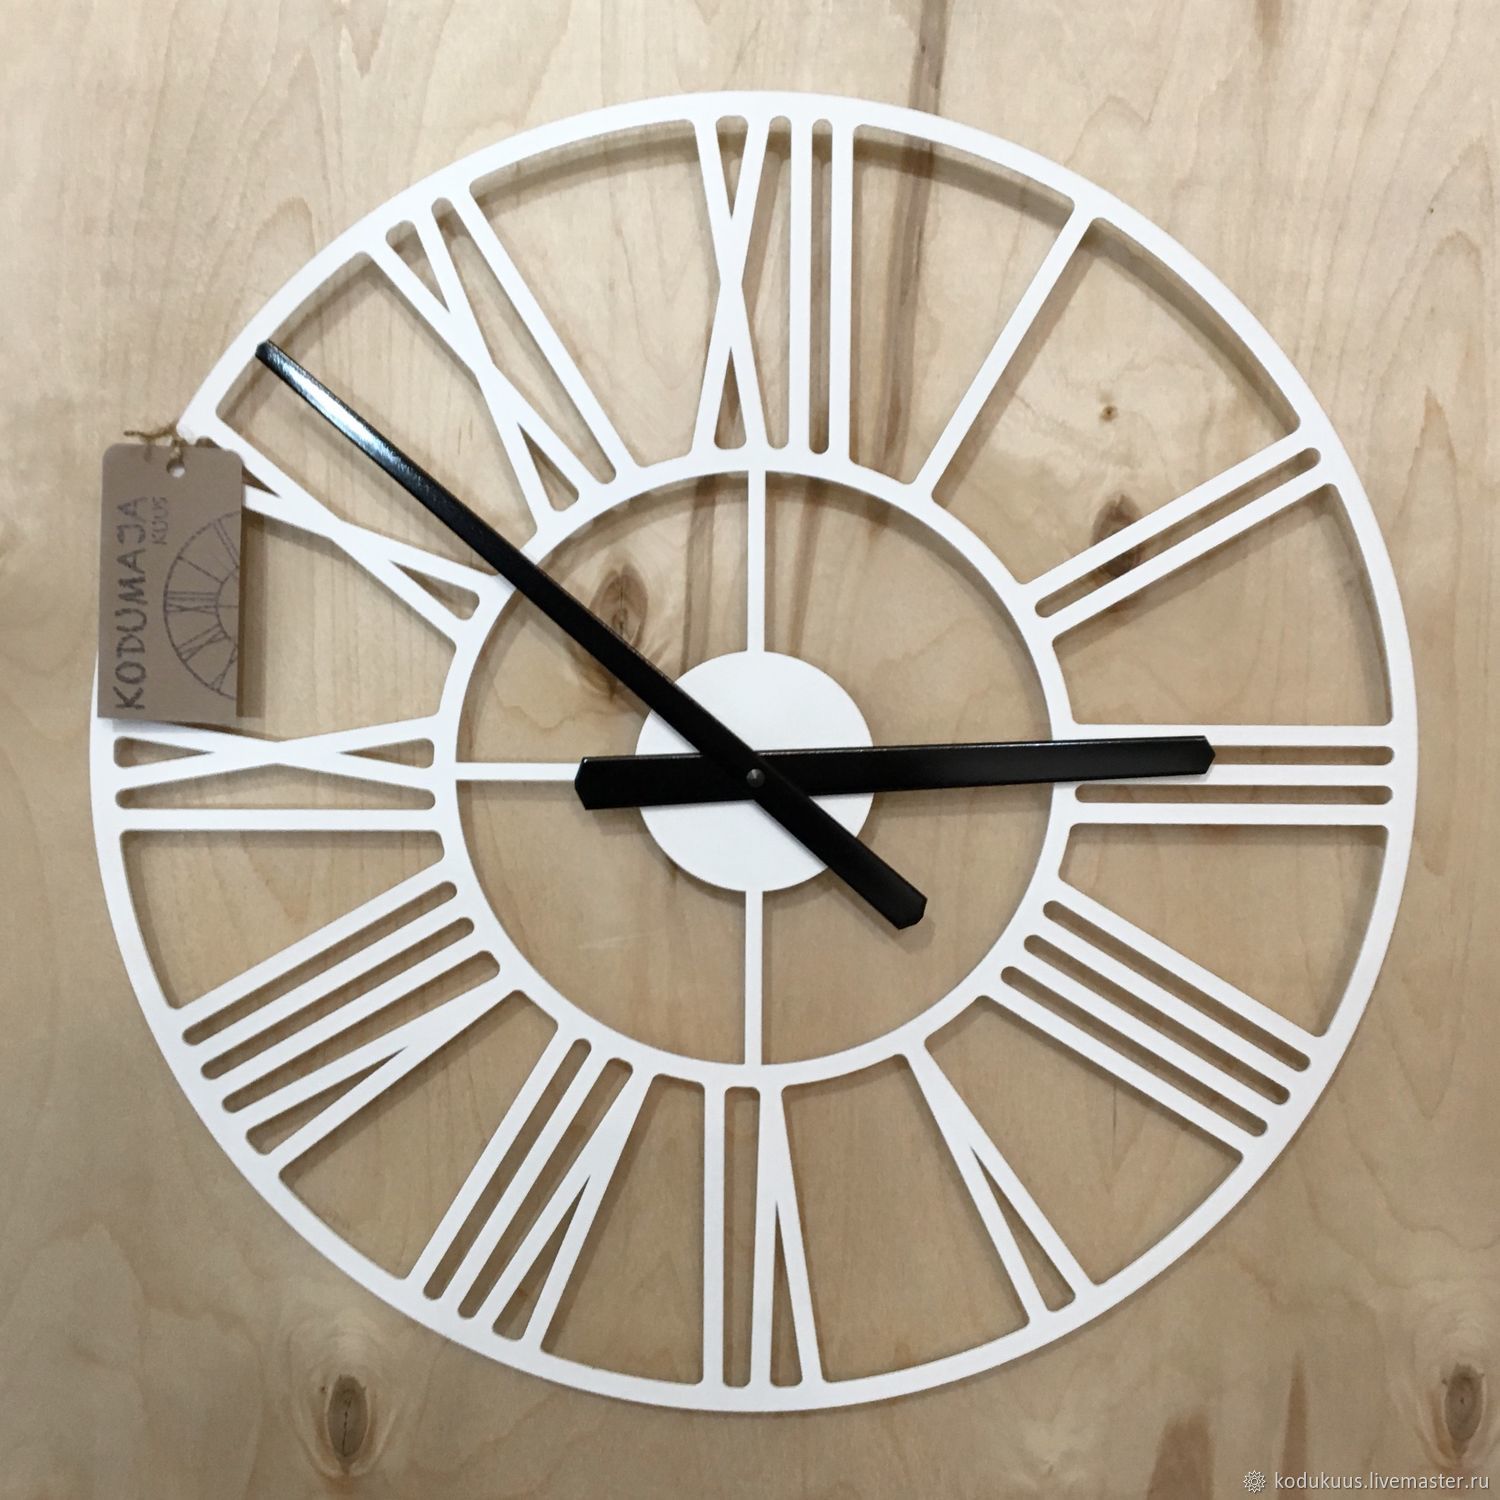 Часы настенные 60 см. Часы настенные Black Metal Clock (40x40 см) 1285860. Часы настенные Олд Норд 45 см. Часы настенные классические. Часы настенные 45см.